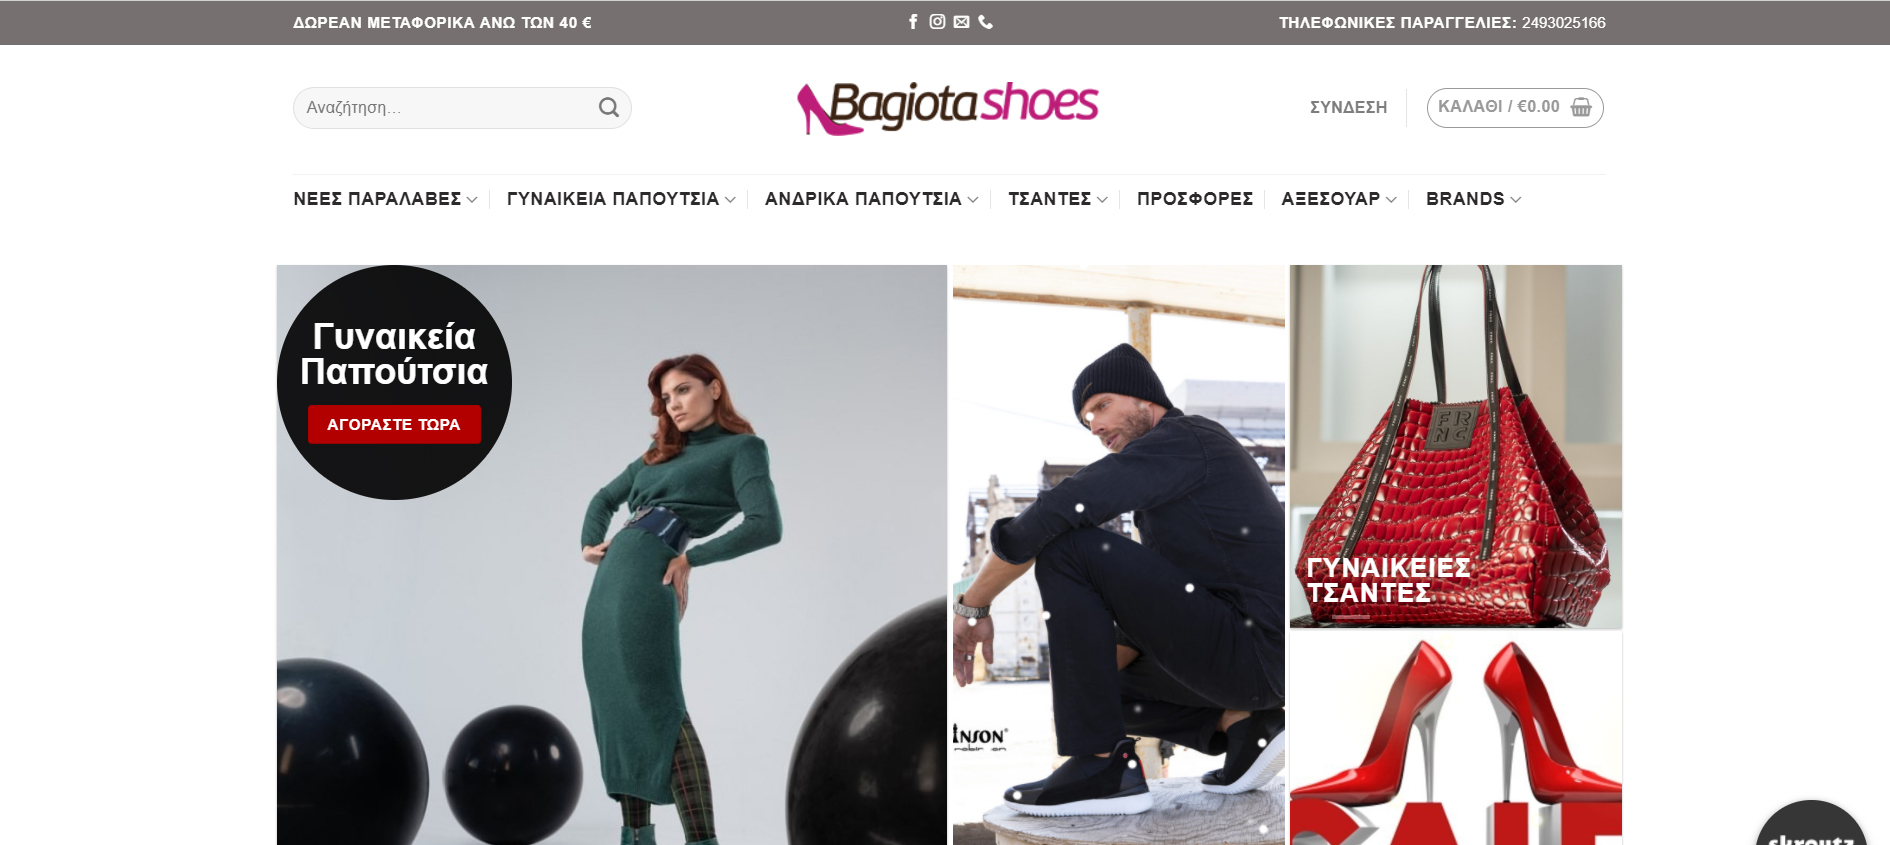 Γυναικεία αξεσουάρ μόδας Bagiota shoes